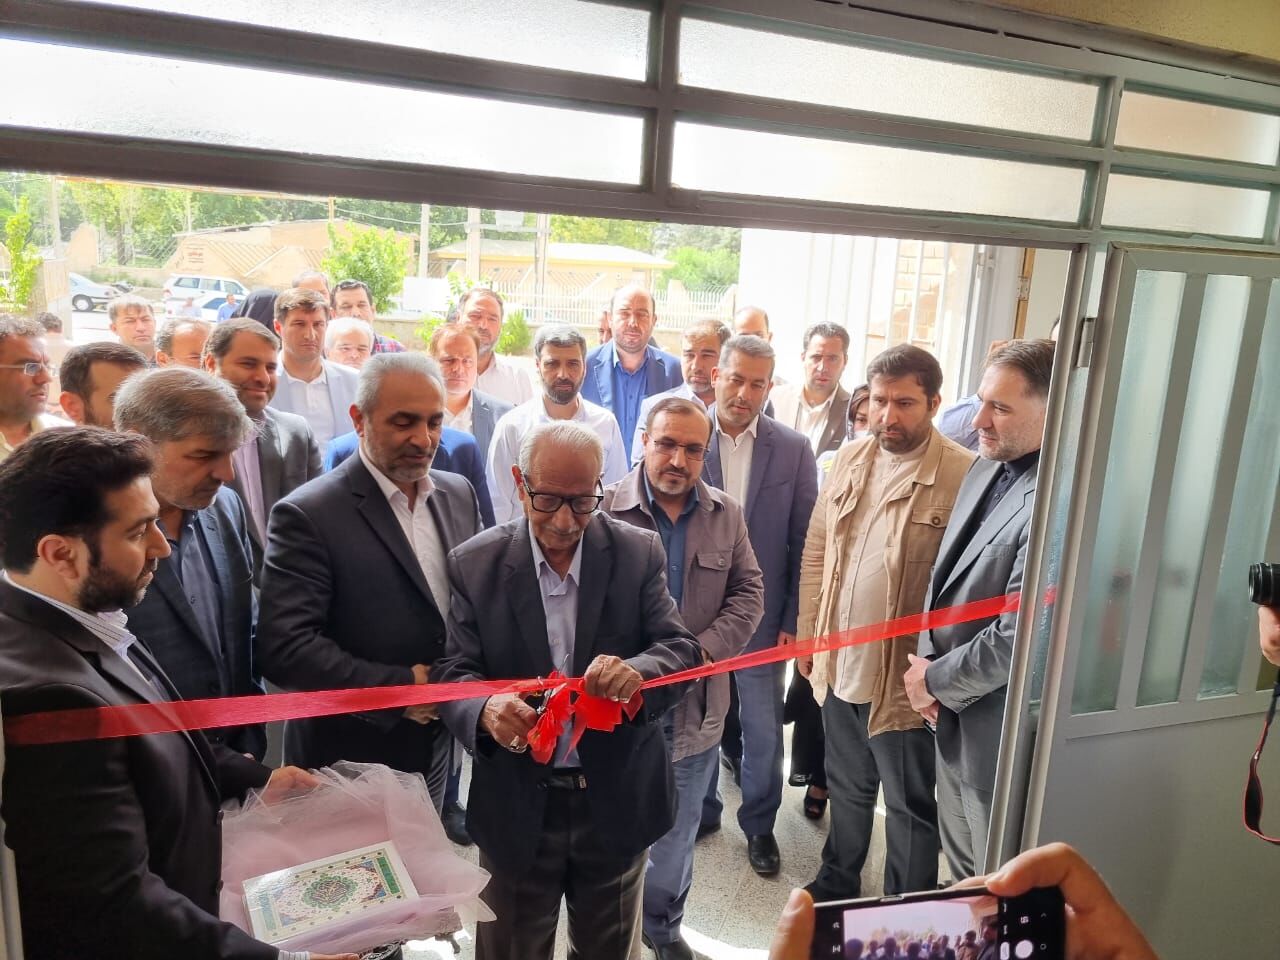 افتتاح اولین درمانگاه شبانه روزی در شهر جدید مهستان